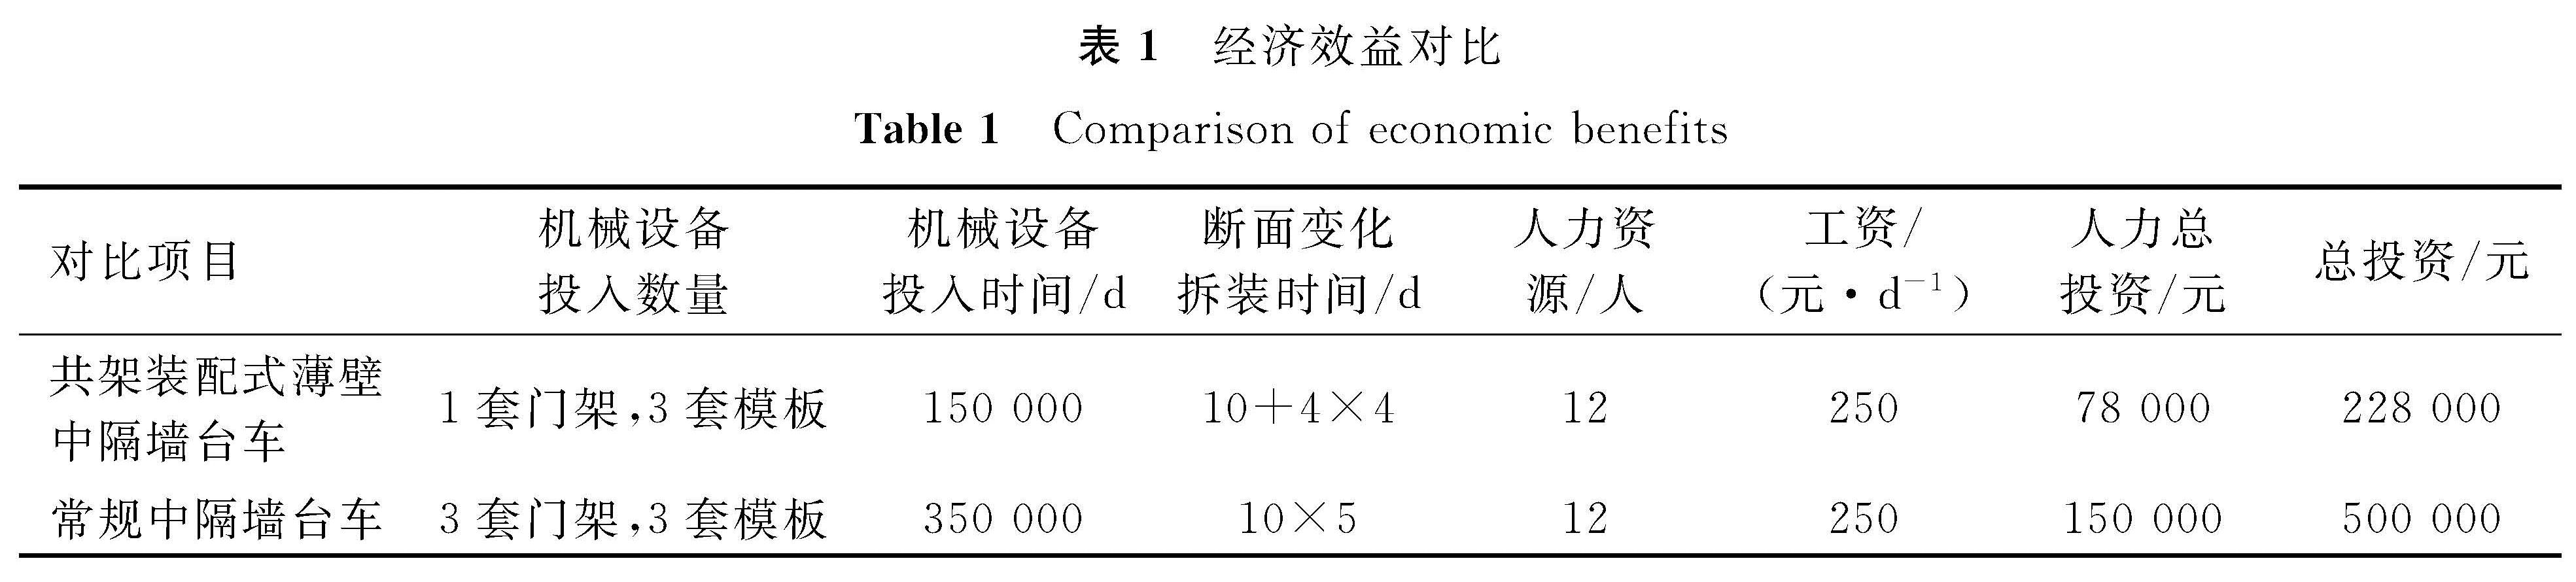 表1 经济效益对比<br/>Table 1 Comparison of economic benefits